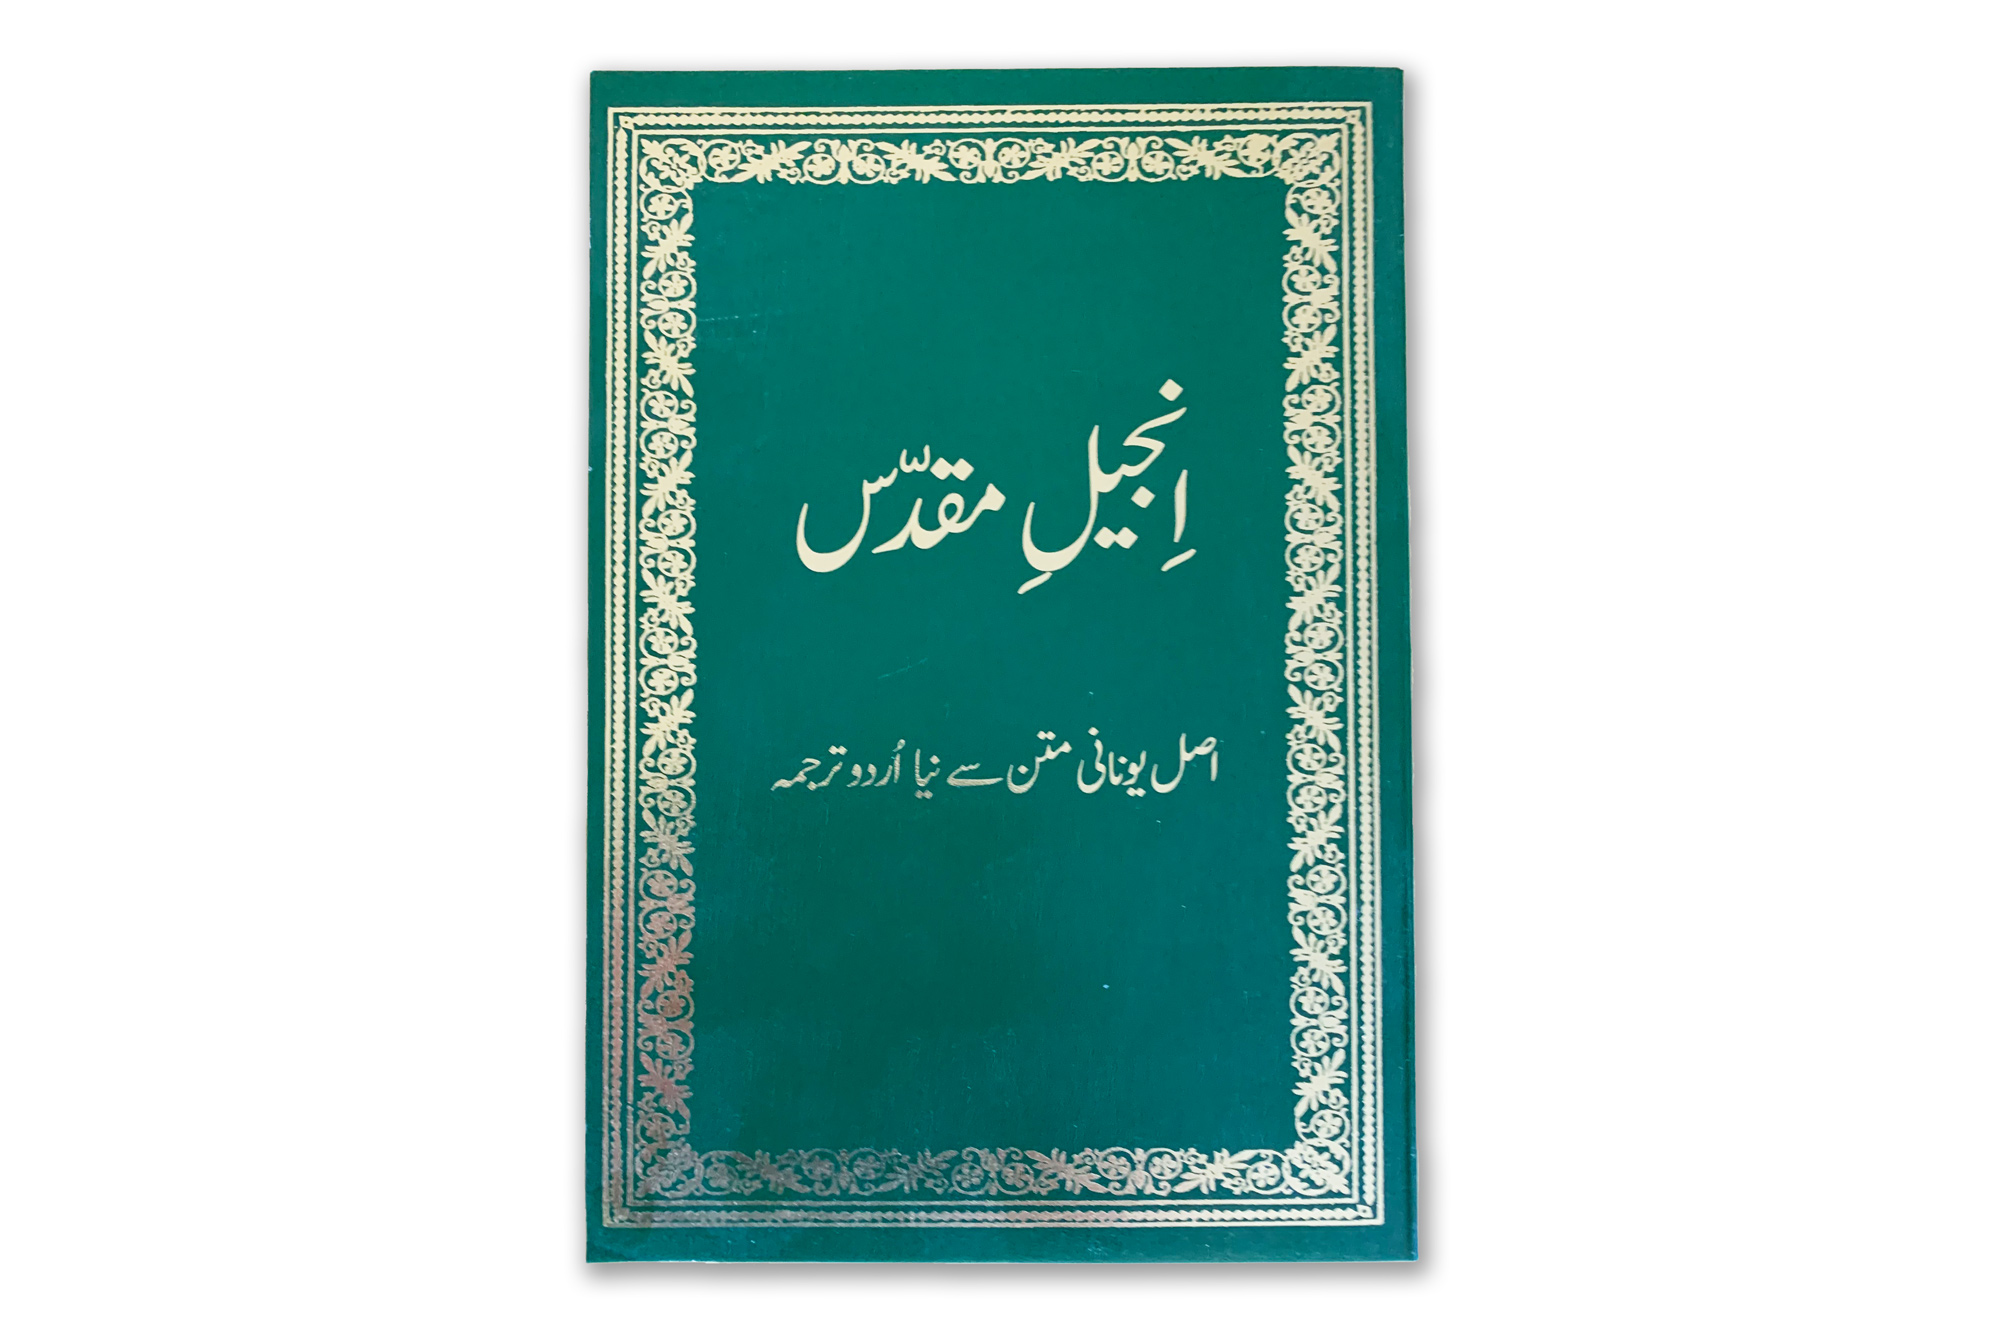 New Testament in Urdu